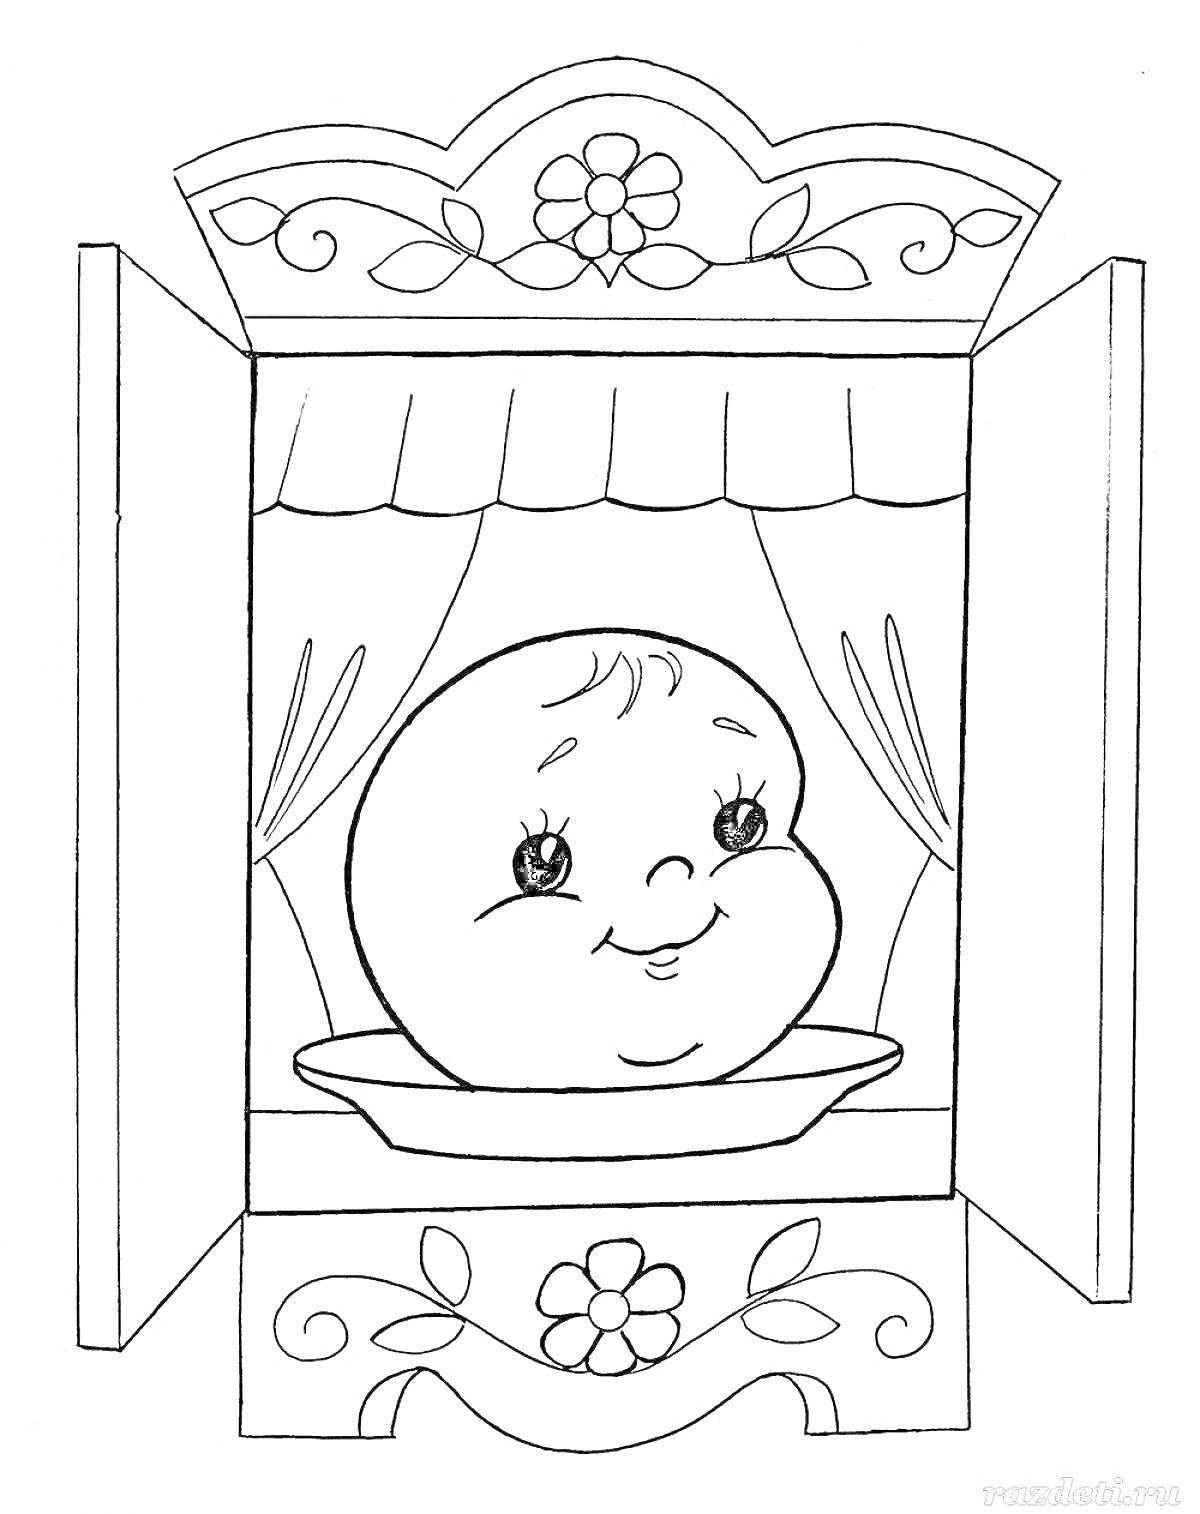 Раскраска Колобок на тарелке в деревянном шкафчике с узорами и занавесками